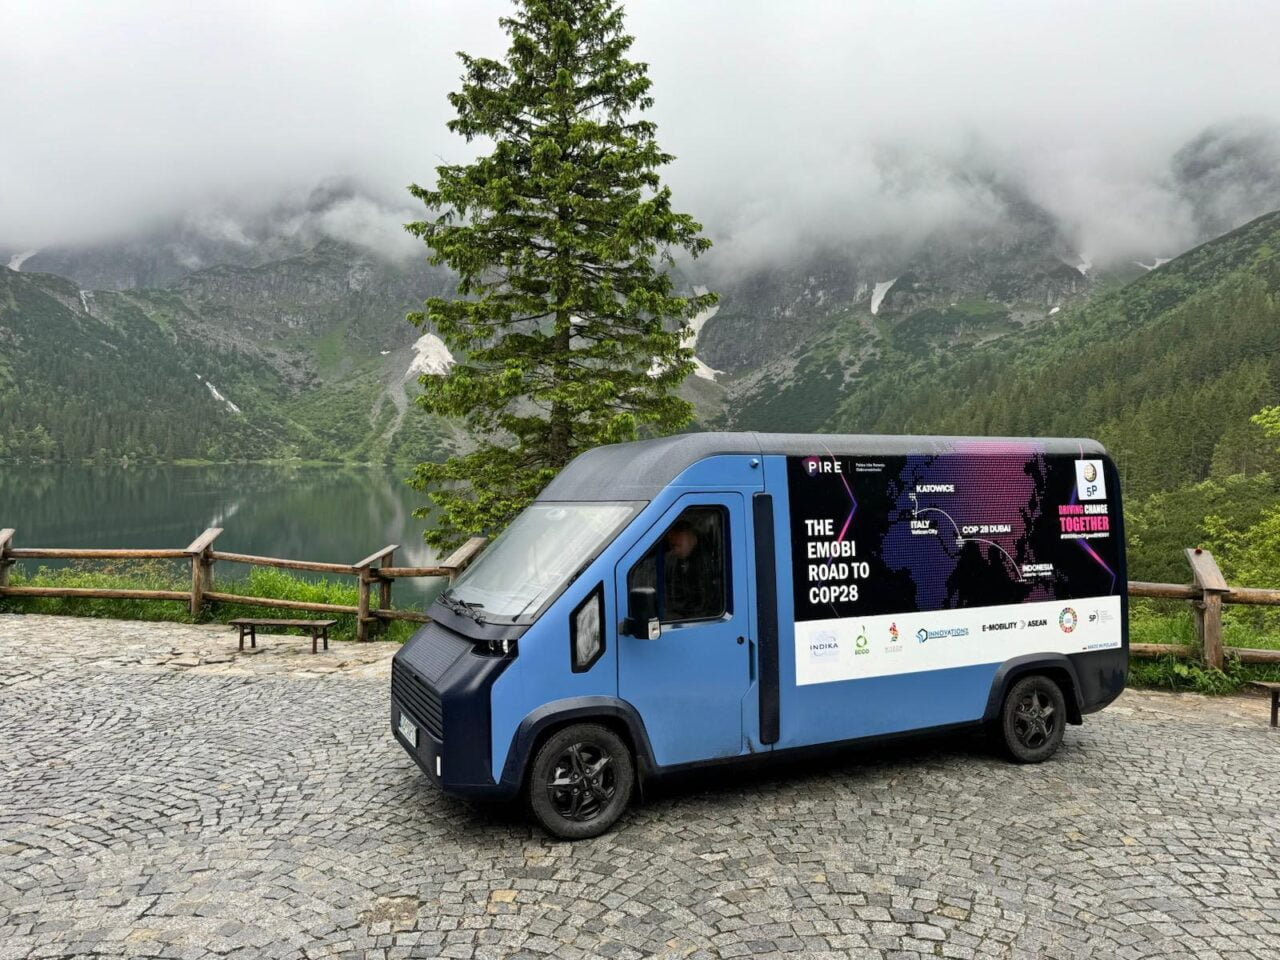 Niebieska furgonetka z napisem "The Emobi Road to COP28" zaparkowana przy górskim jeziorze, w tle góry pokryte mgłą i lasem.